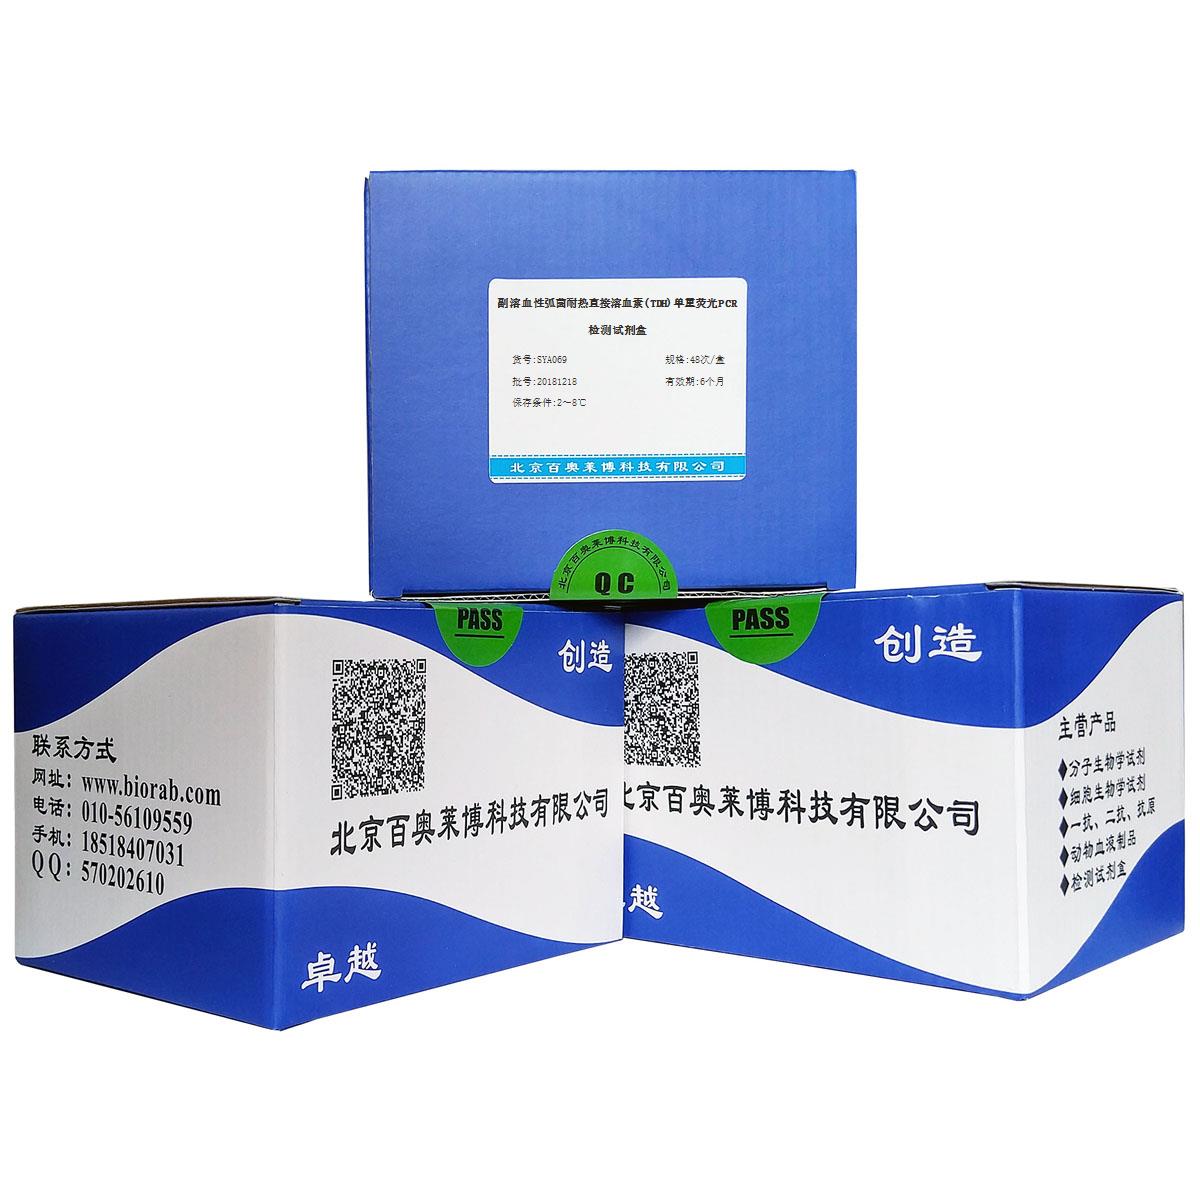 副溶血性弧菌耐热直接溶血素(TDH)单重荧光PCR检测试剂盒